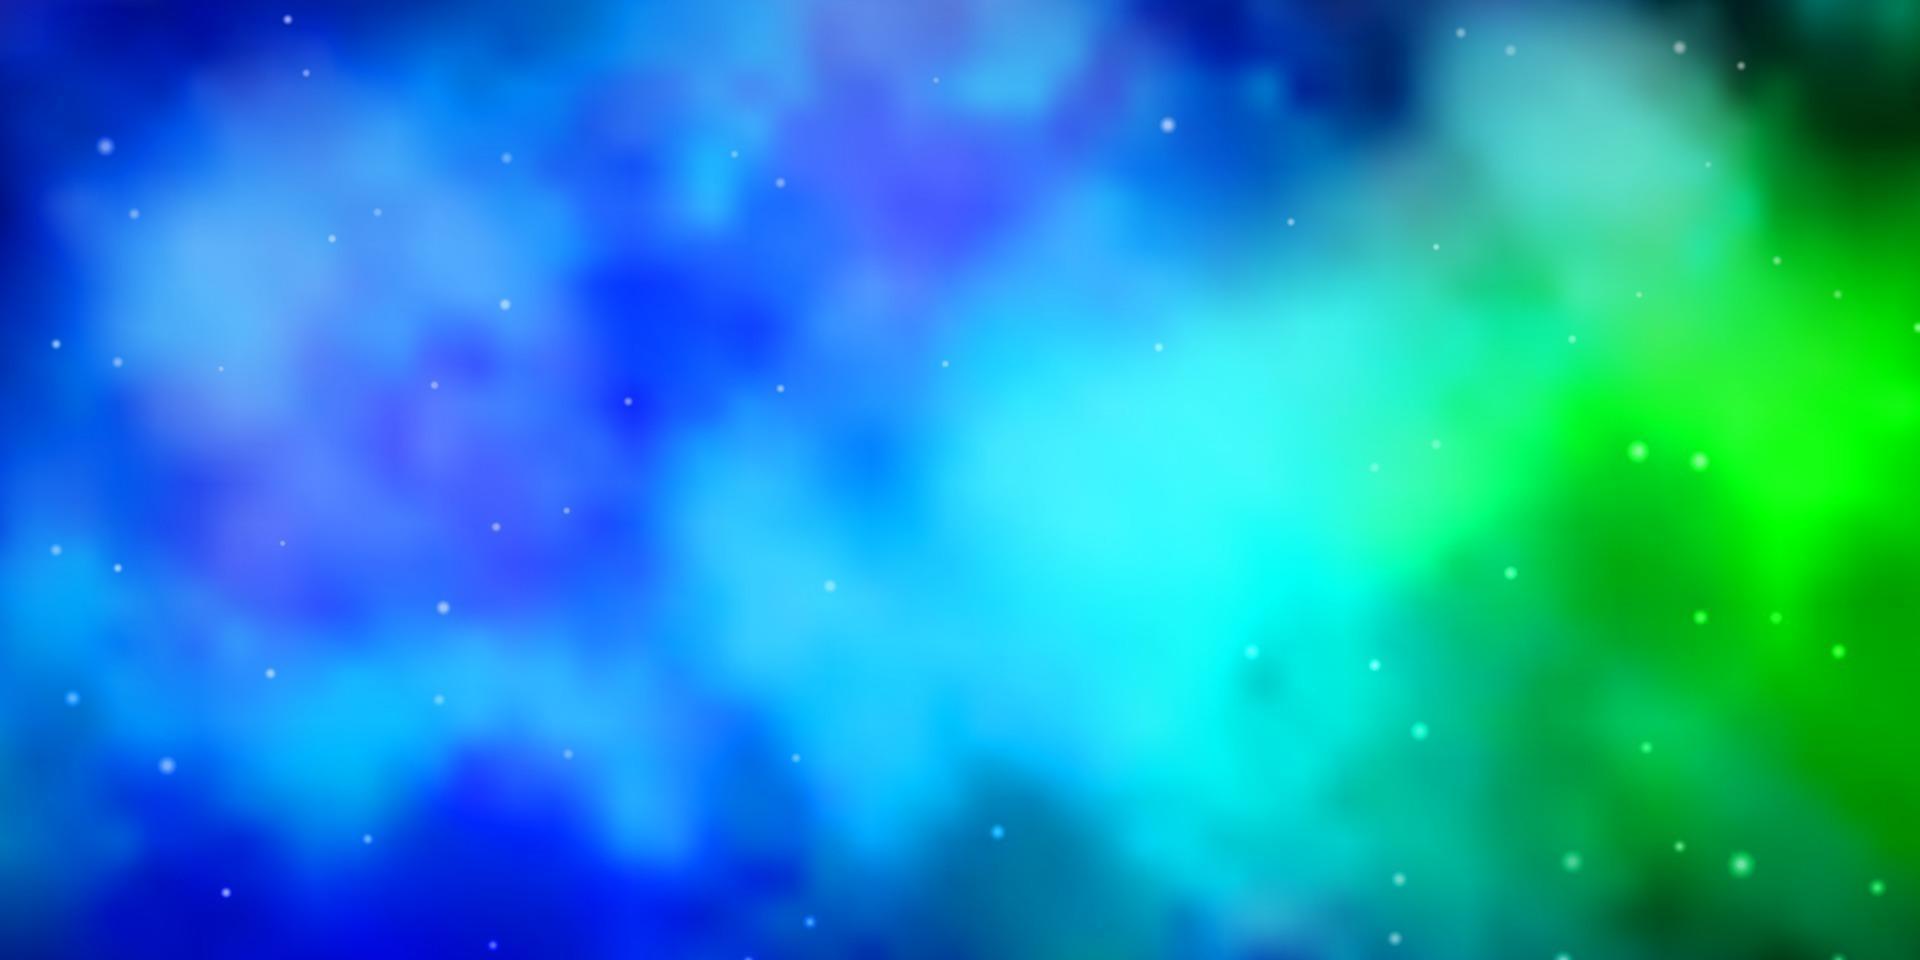 patrón de vector azul claro, verde con estrellas abstractas.